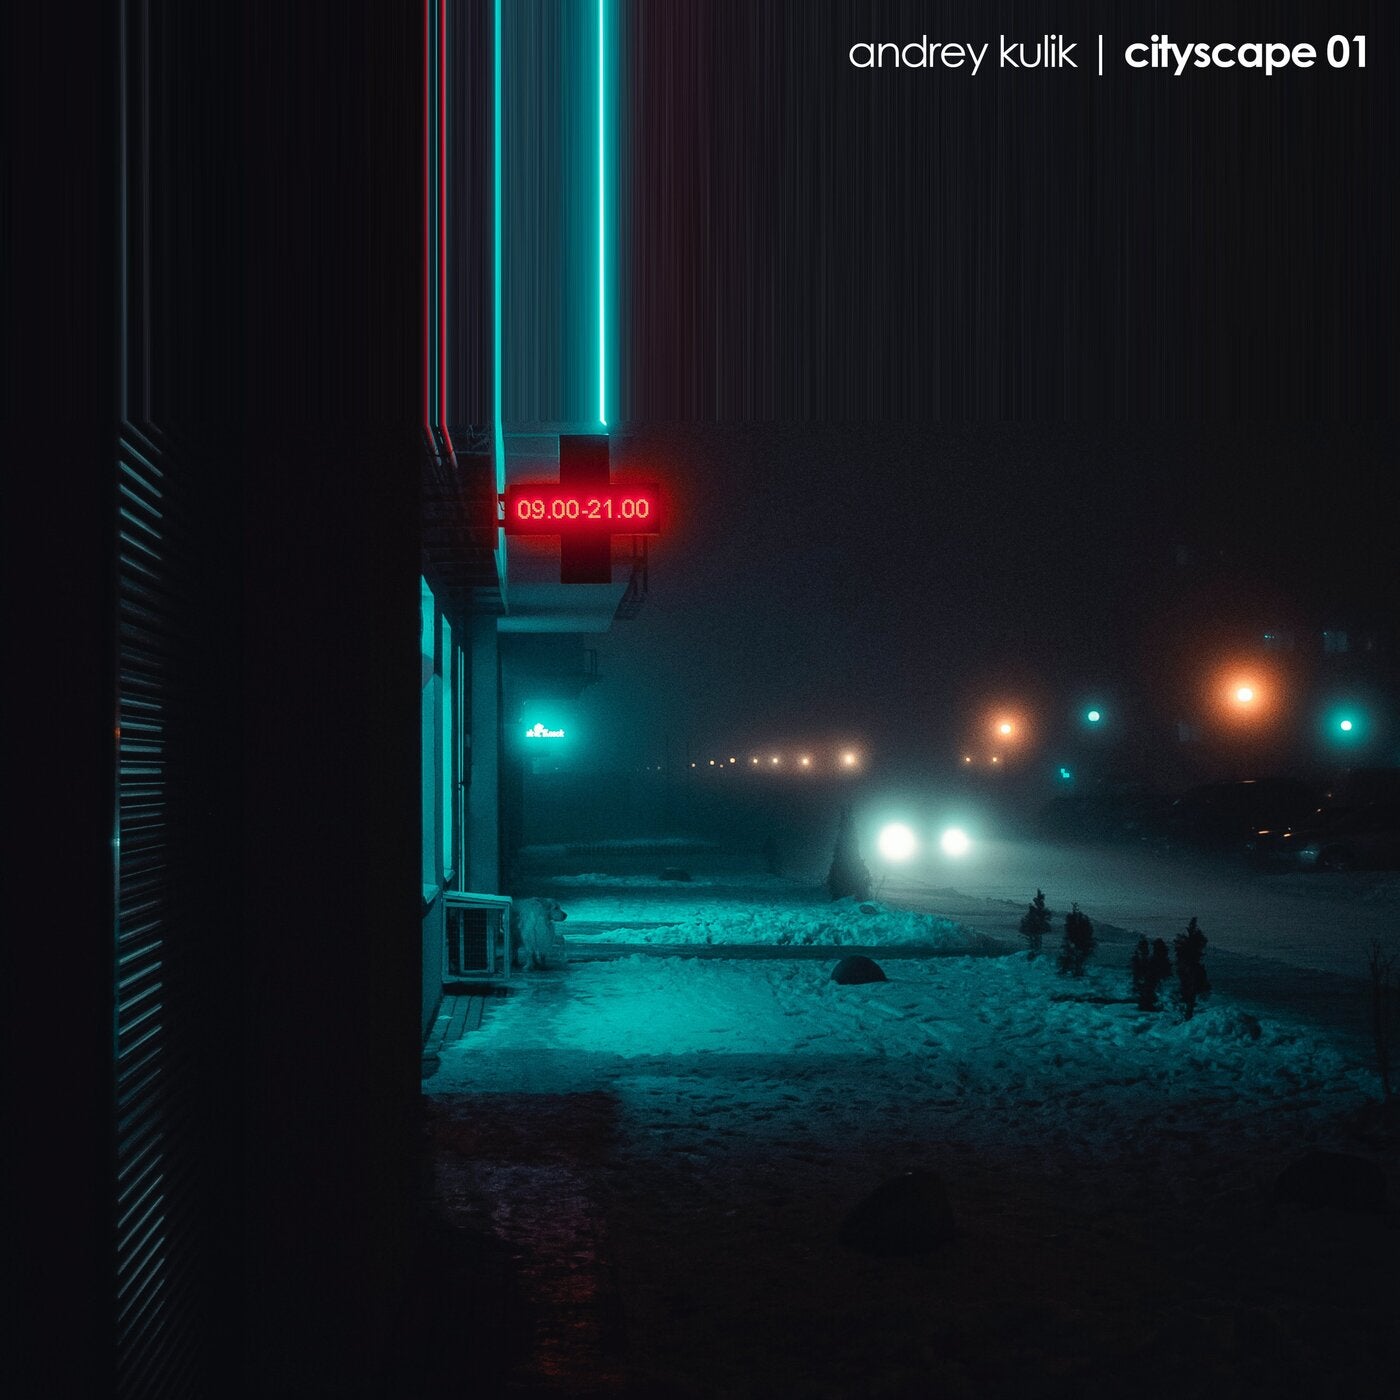 Cityscape 01